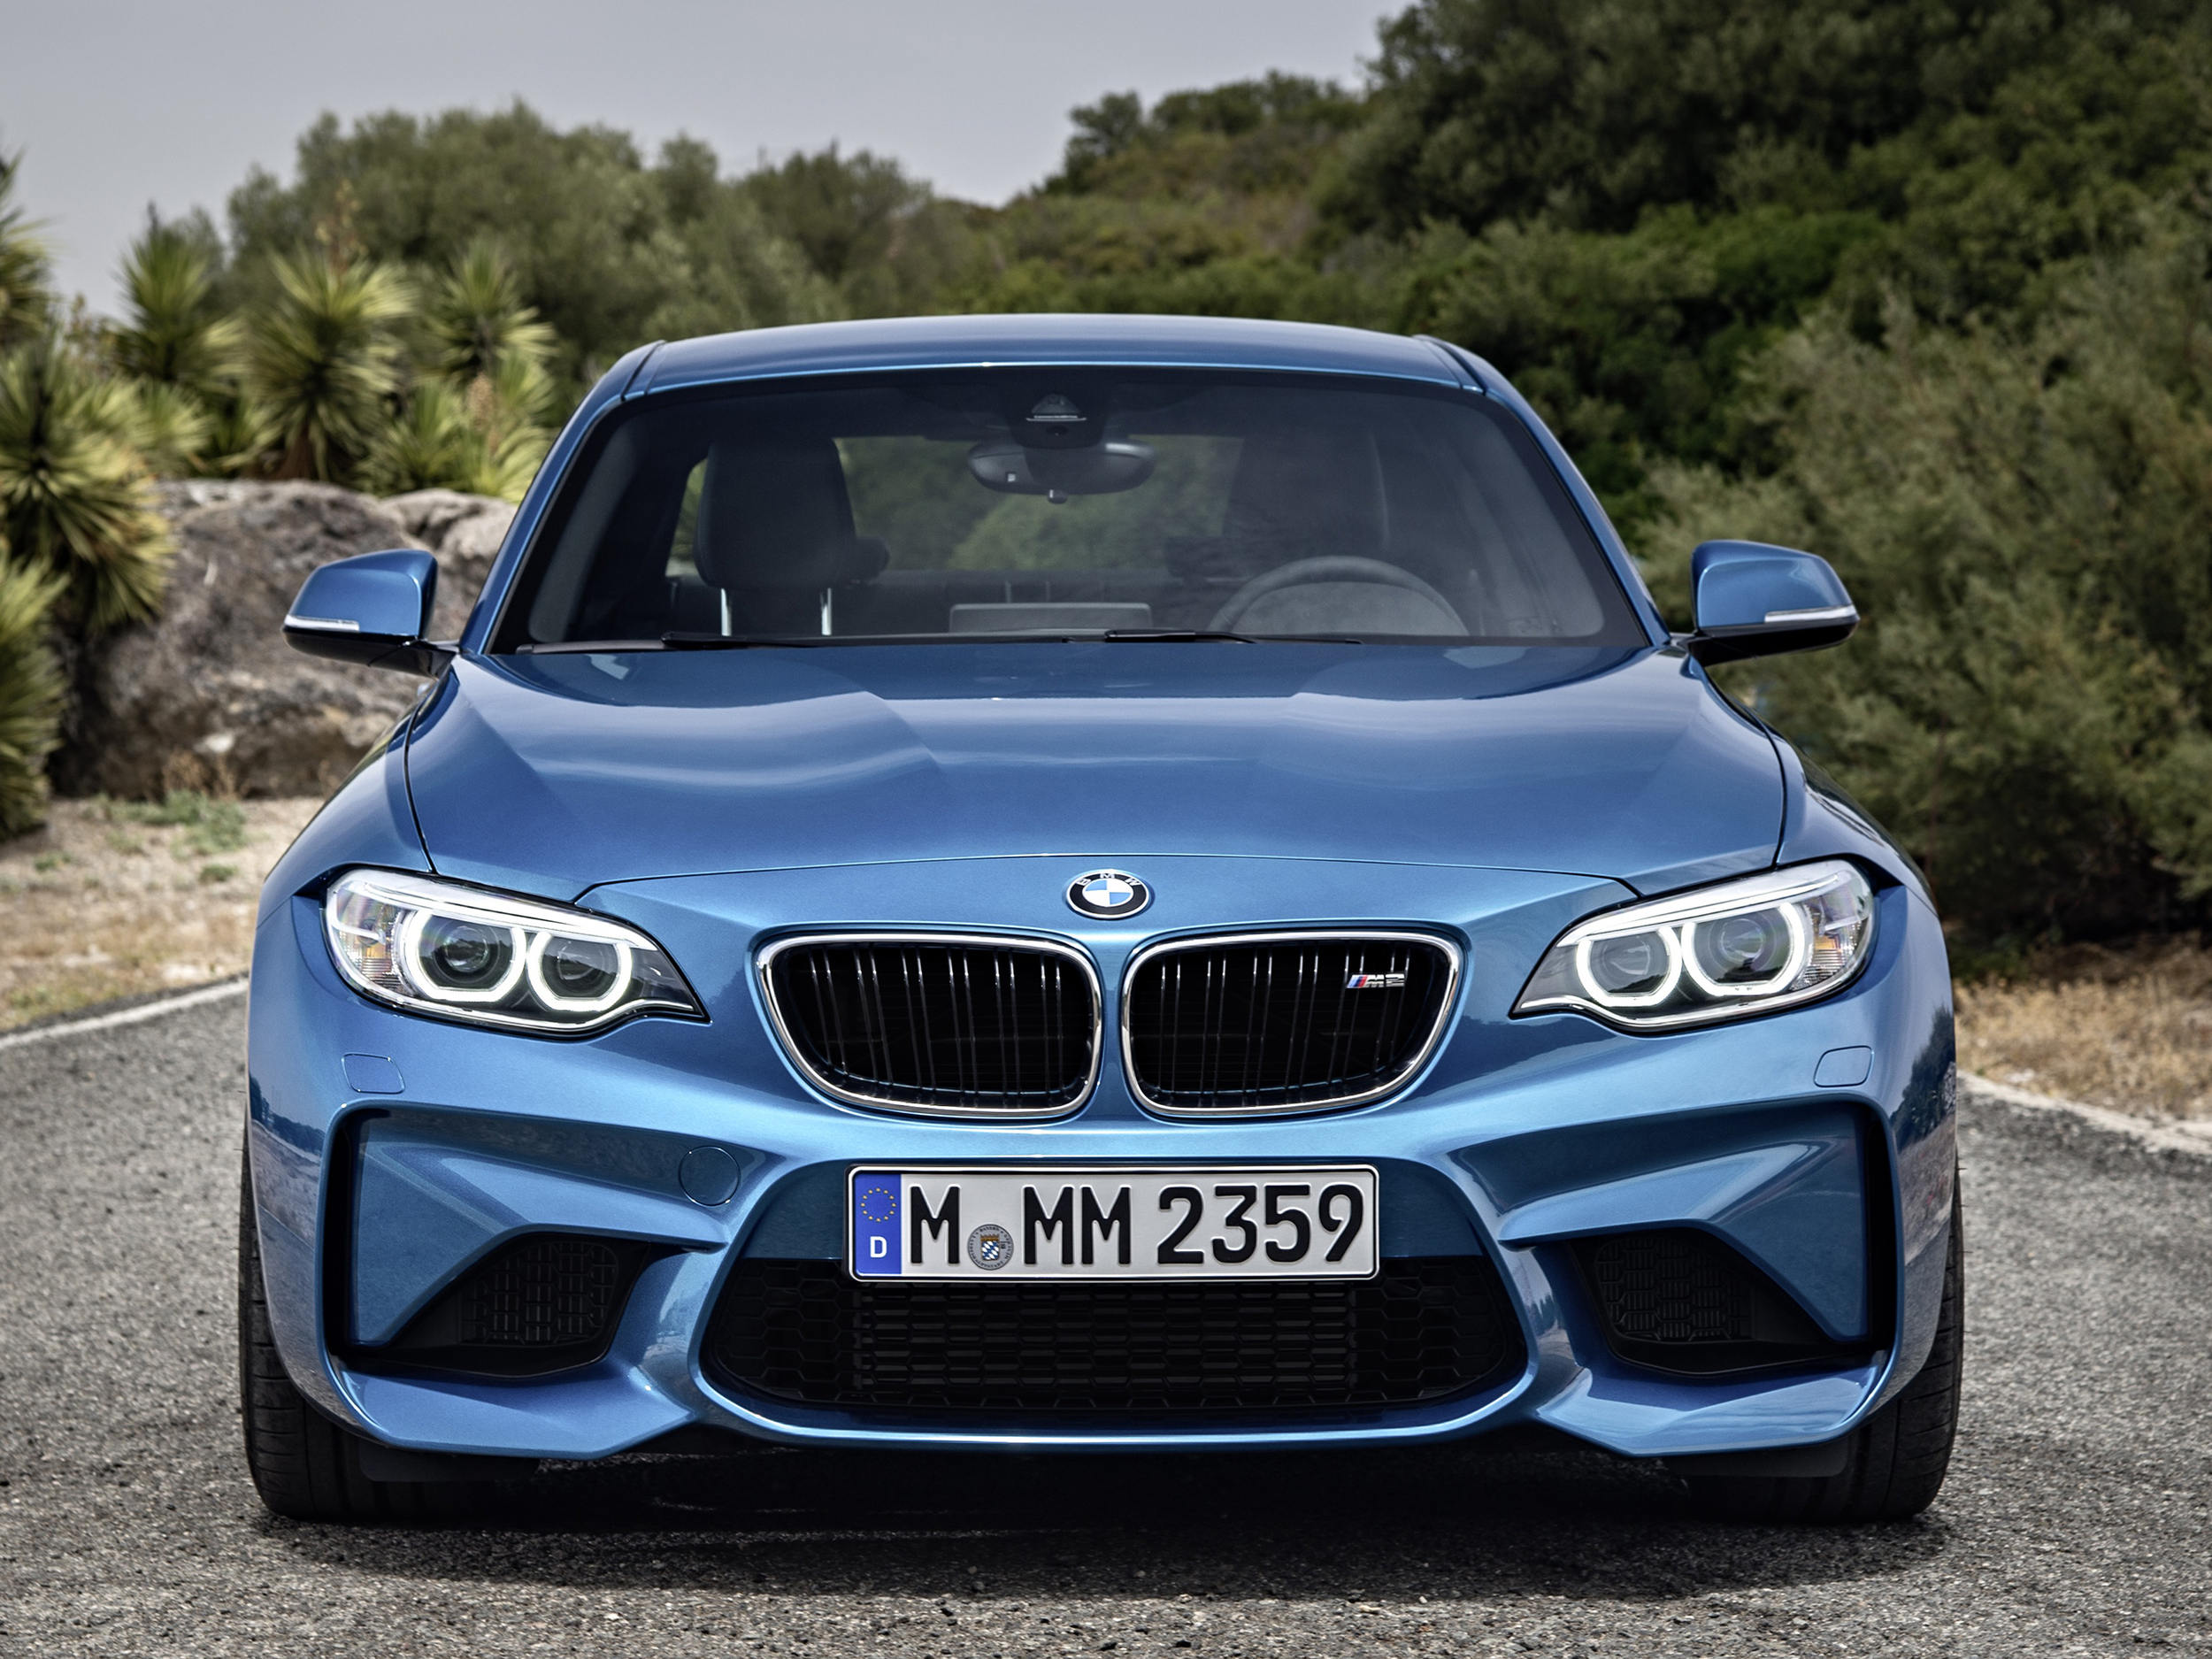 New BMW M2 revealed